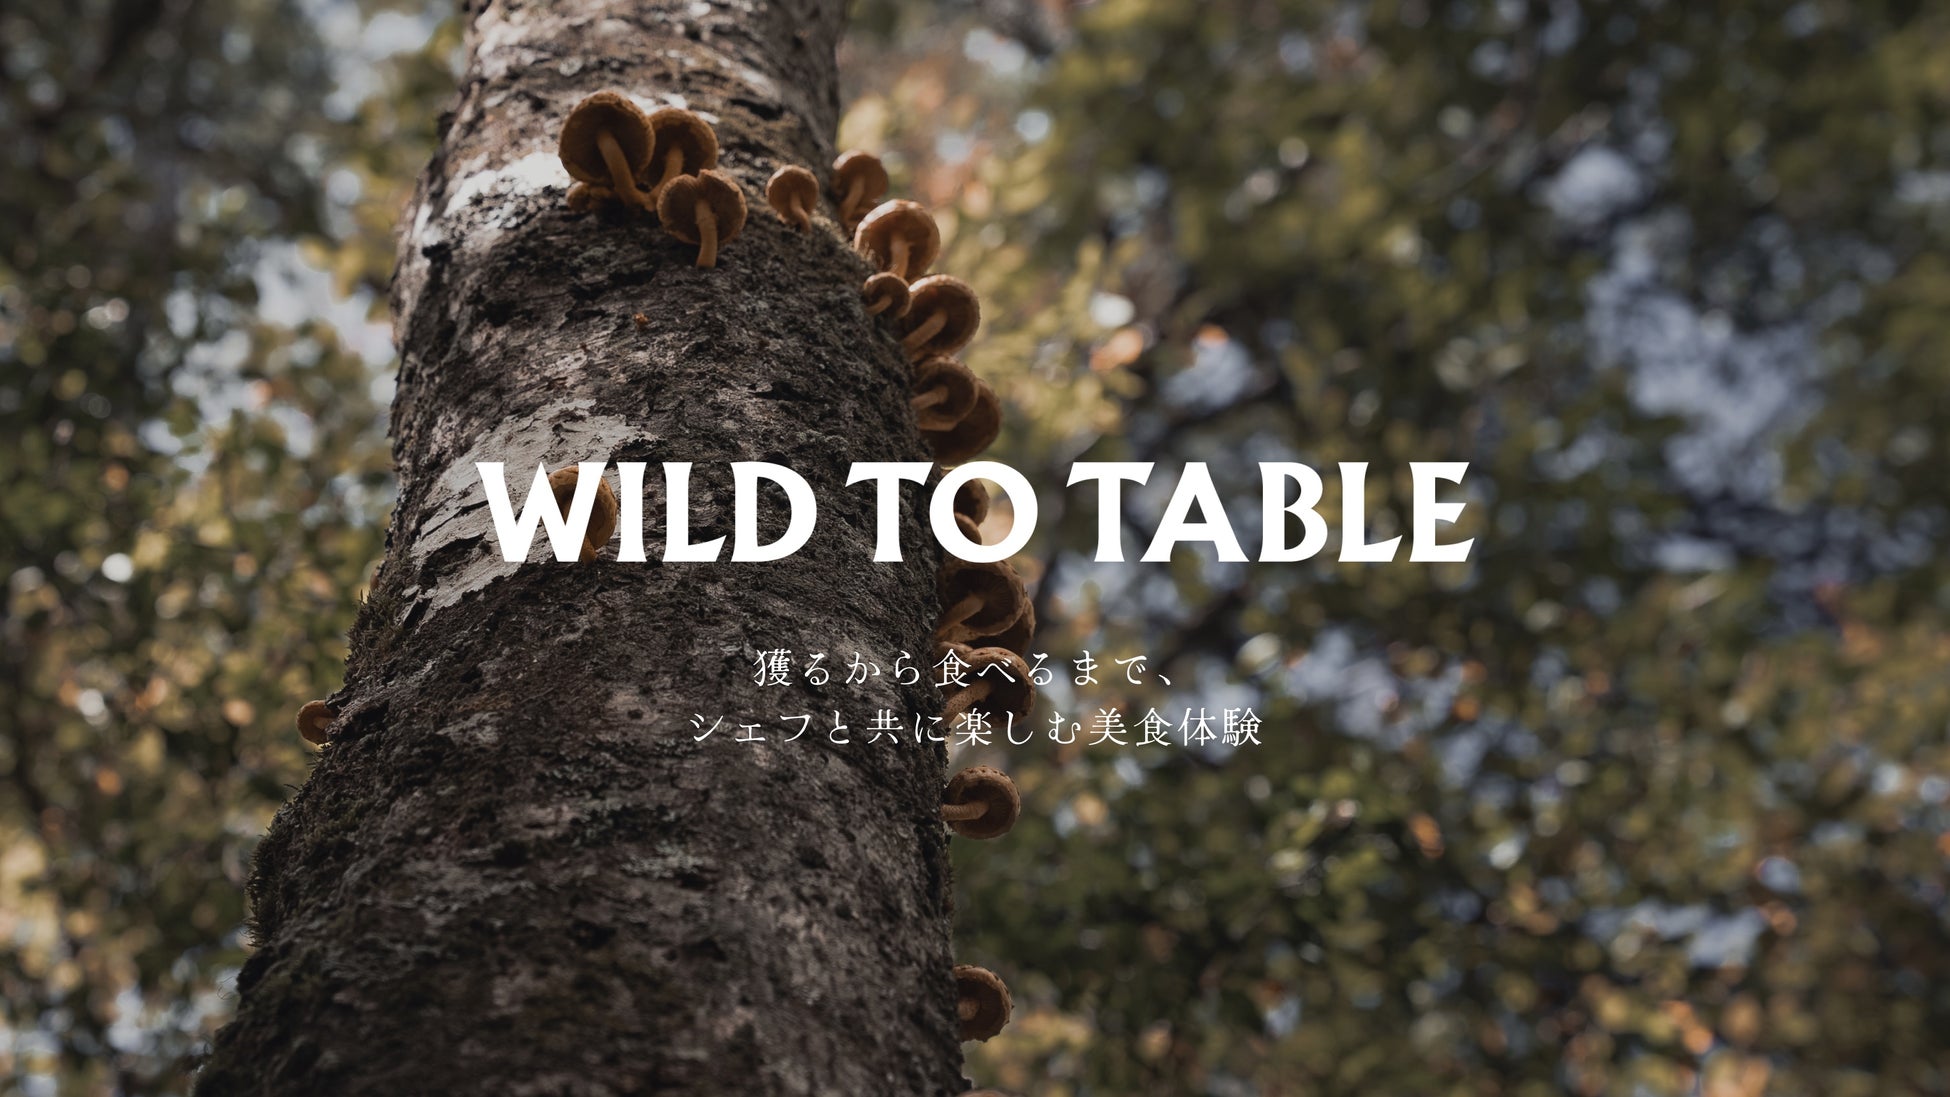 株式会社comeal、採集体験から楽しむ美食倶楽部「WILD TO TABLE」をリリース